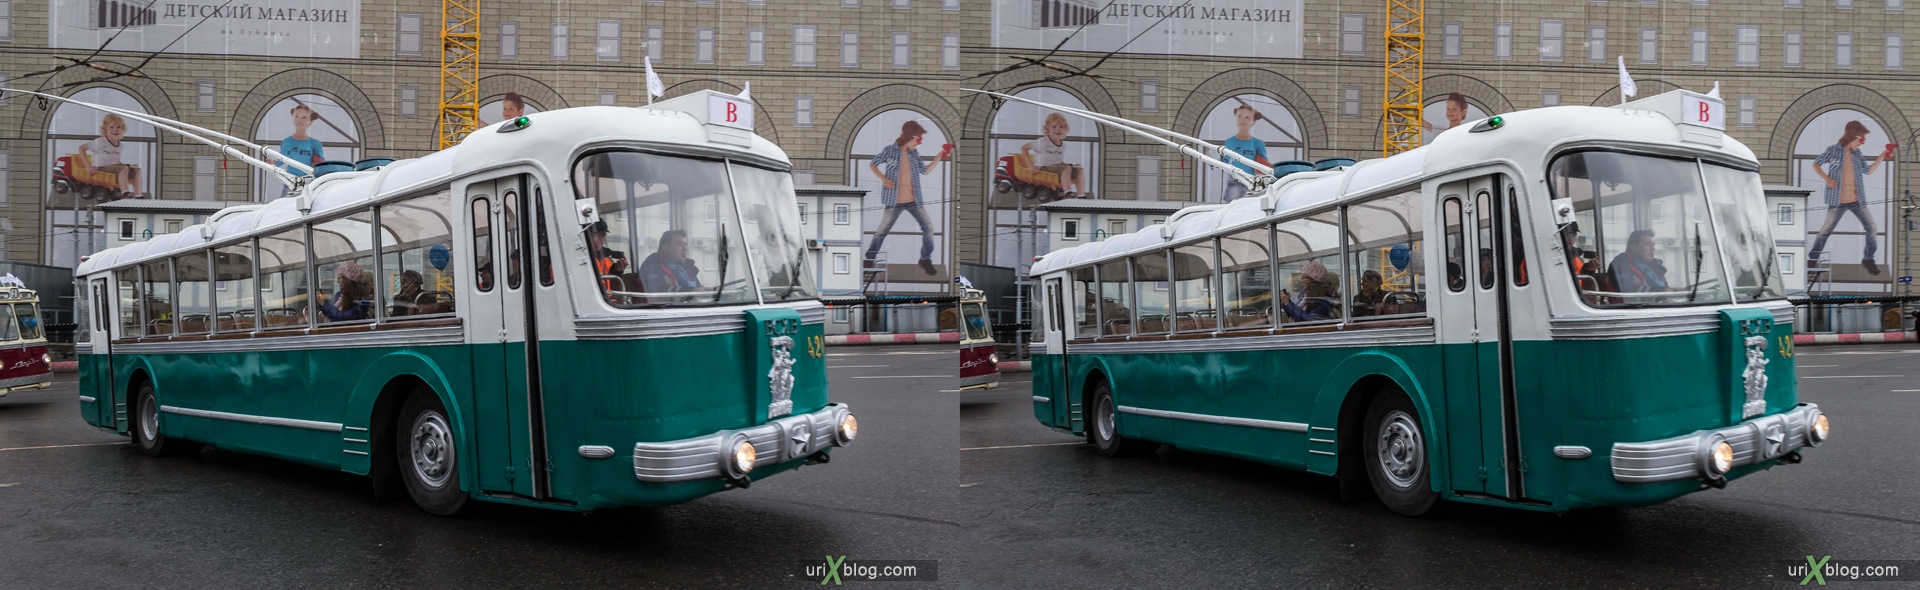 2013, Москва, Парад, старый, старинный, троллейбус, улица, Лубянская площадь, 3D, перекрёстная стереопара, стерео, стереопара